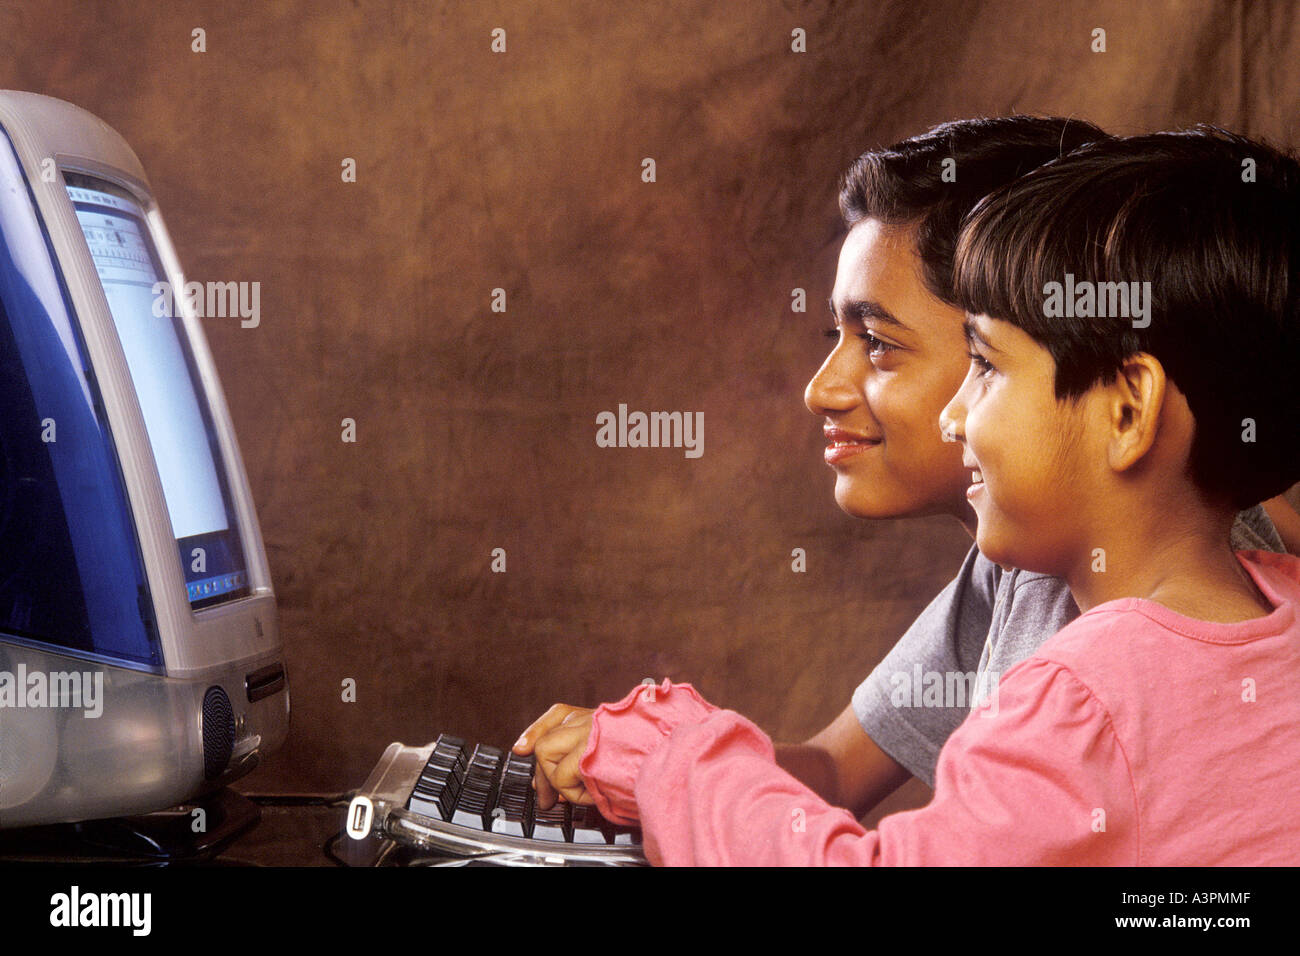 RHS99482 Sud indiano asiatico i bambini che lavorano sul computer guardando verso computer con sorriso MR 518 519 Foto Stock